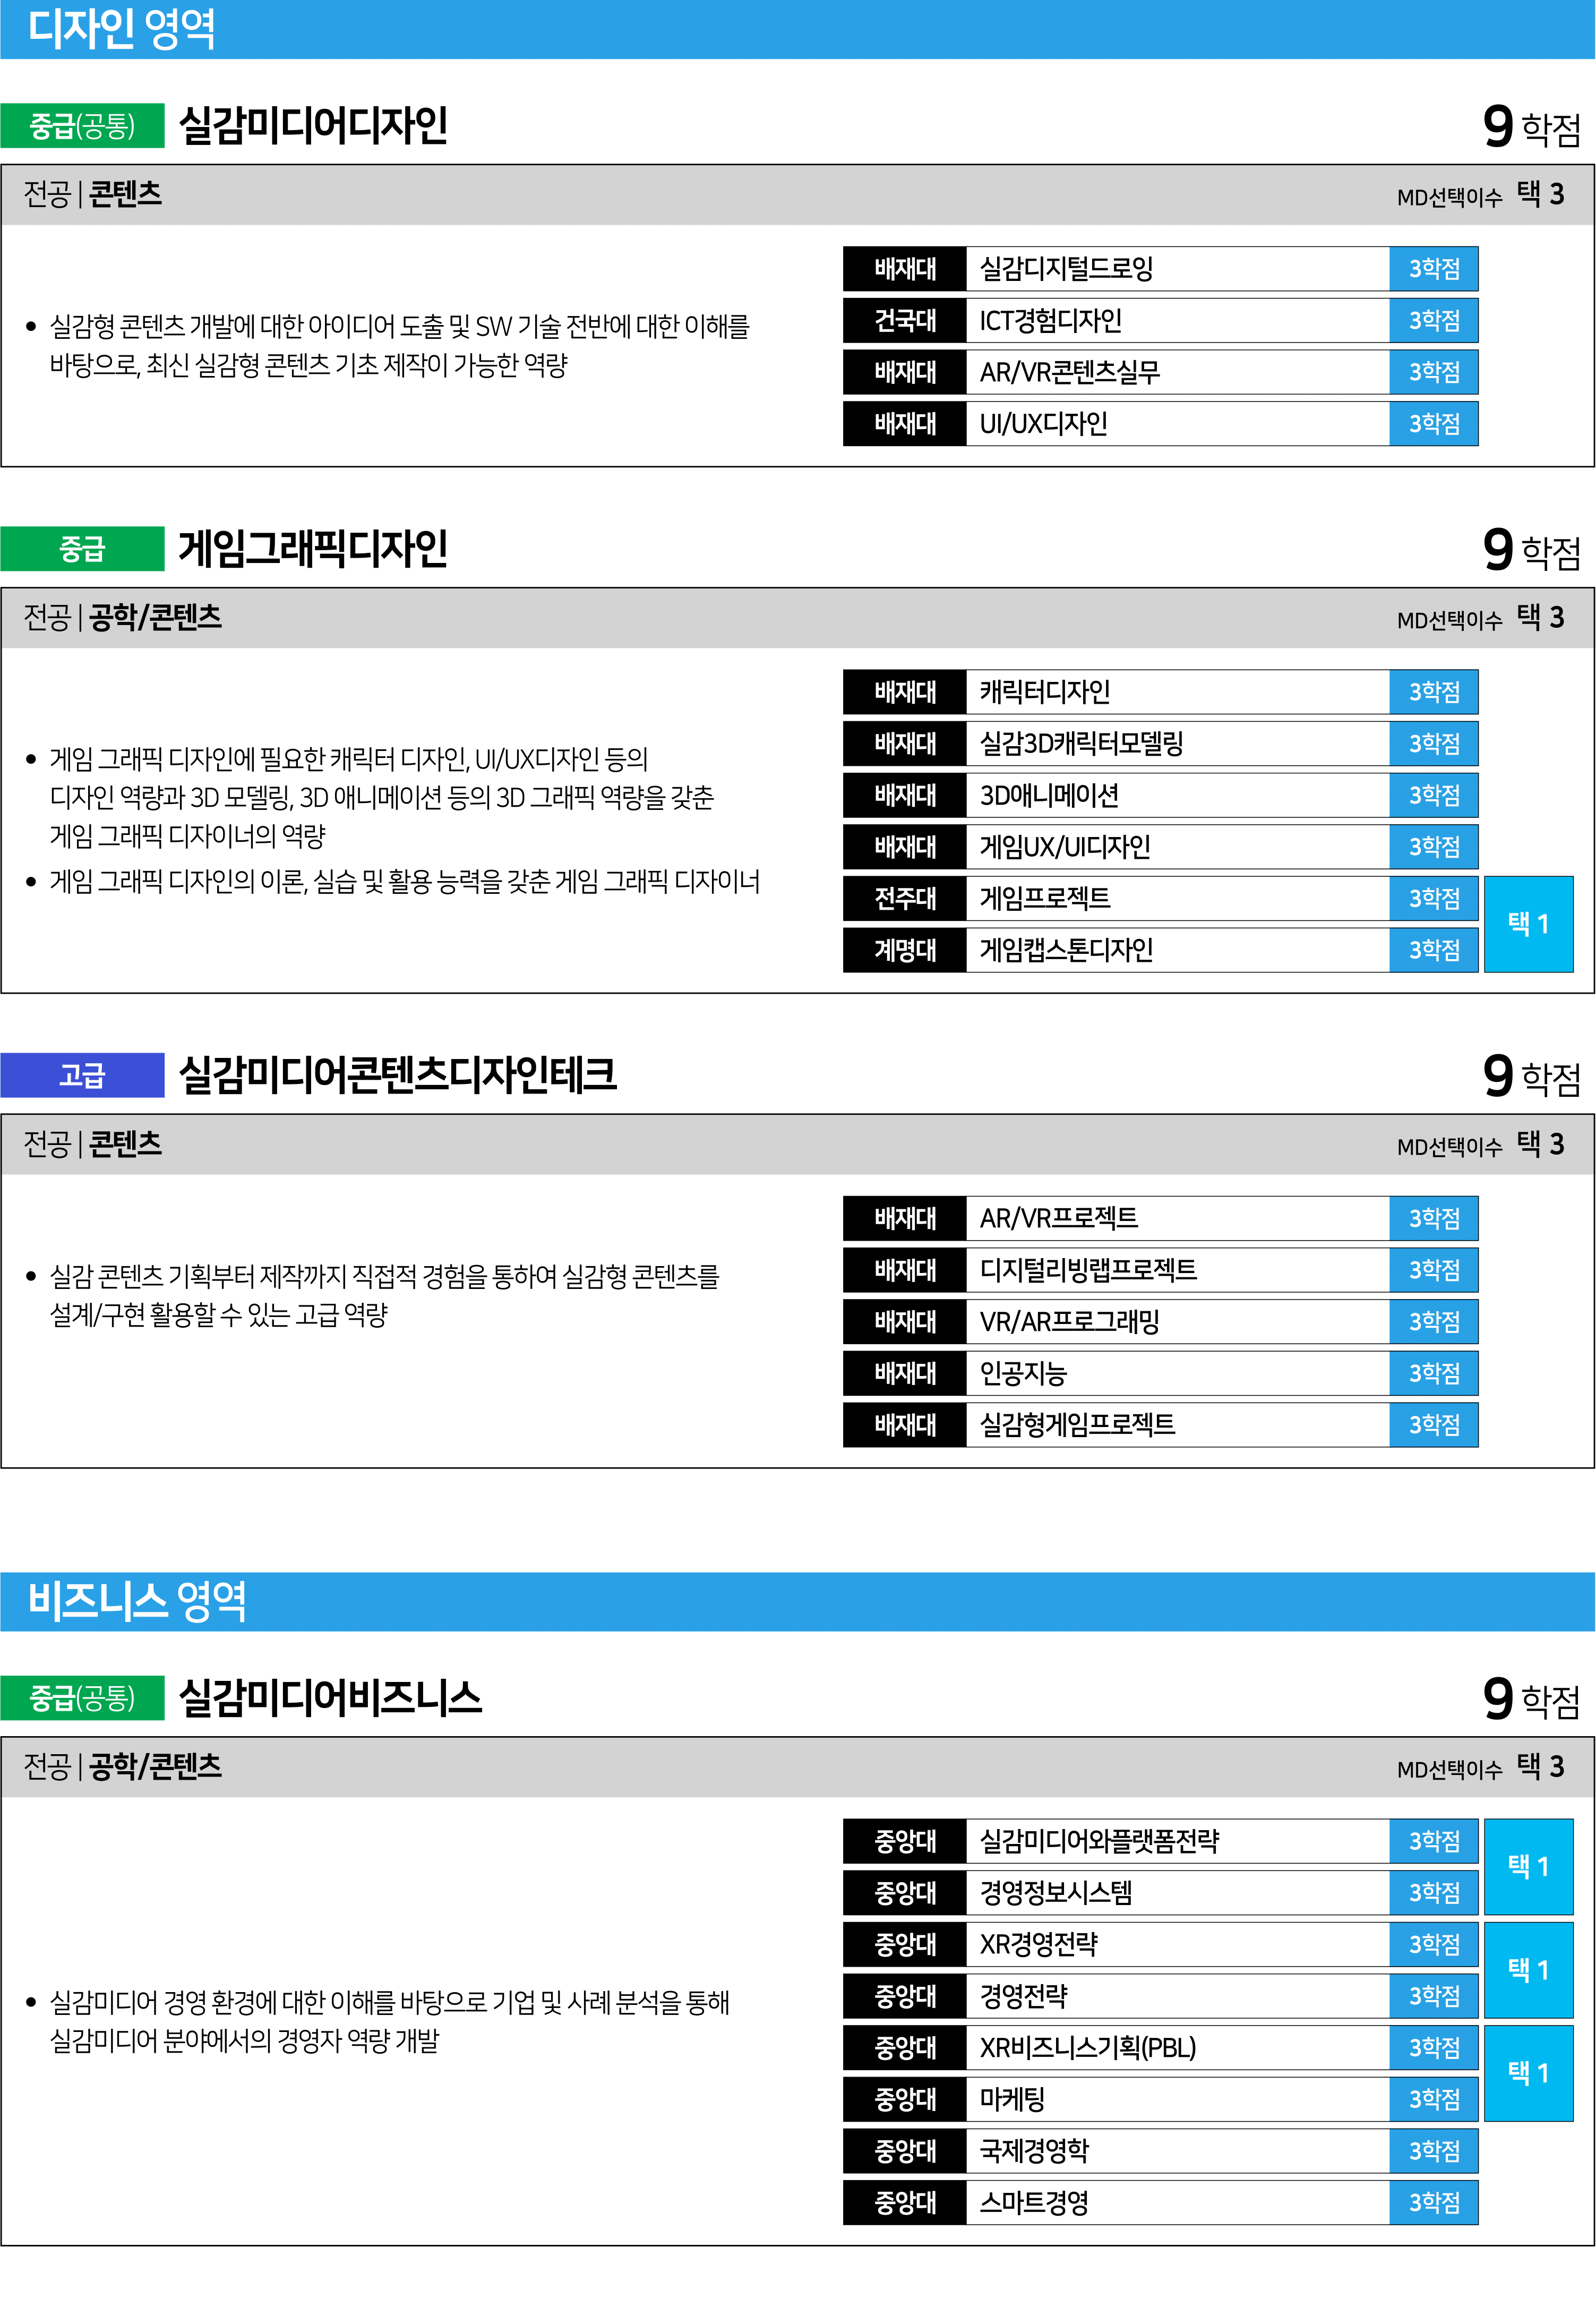 실감미디어혁신공유대학 표준교육과정